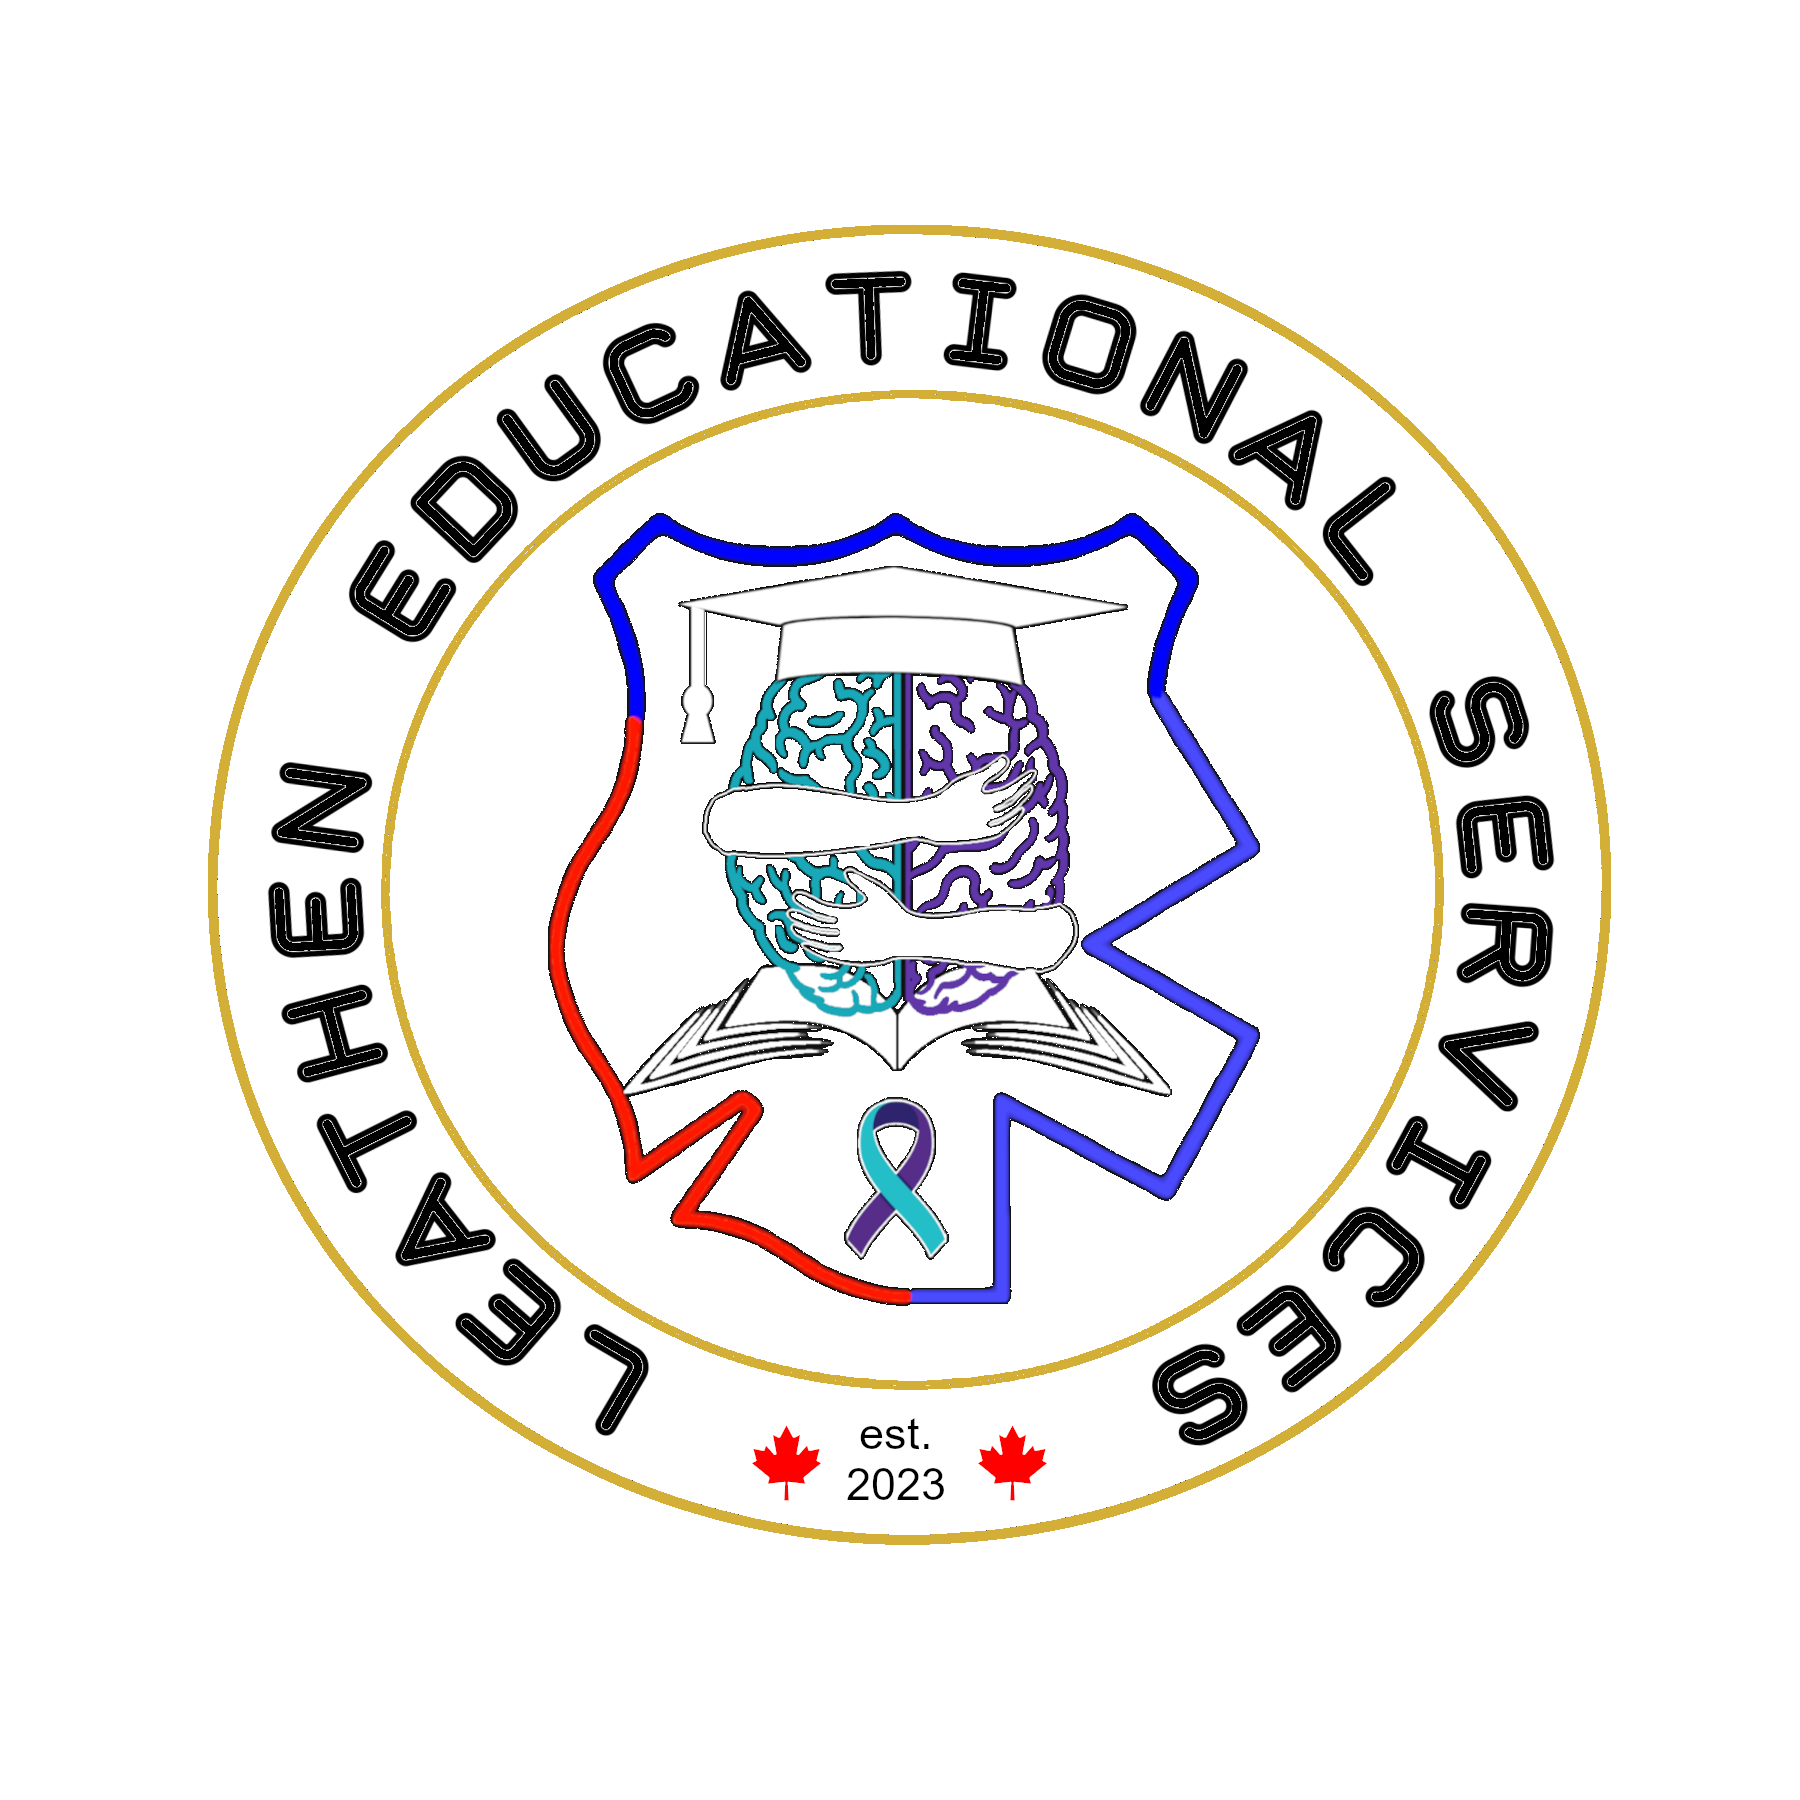 Leathen Educational Services